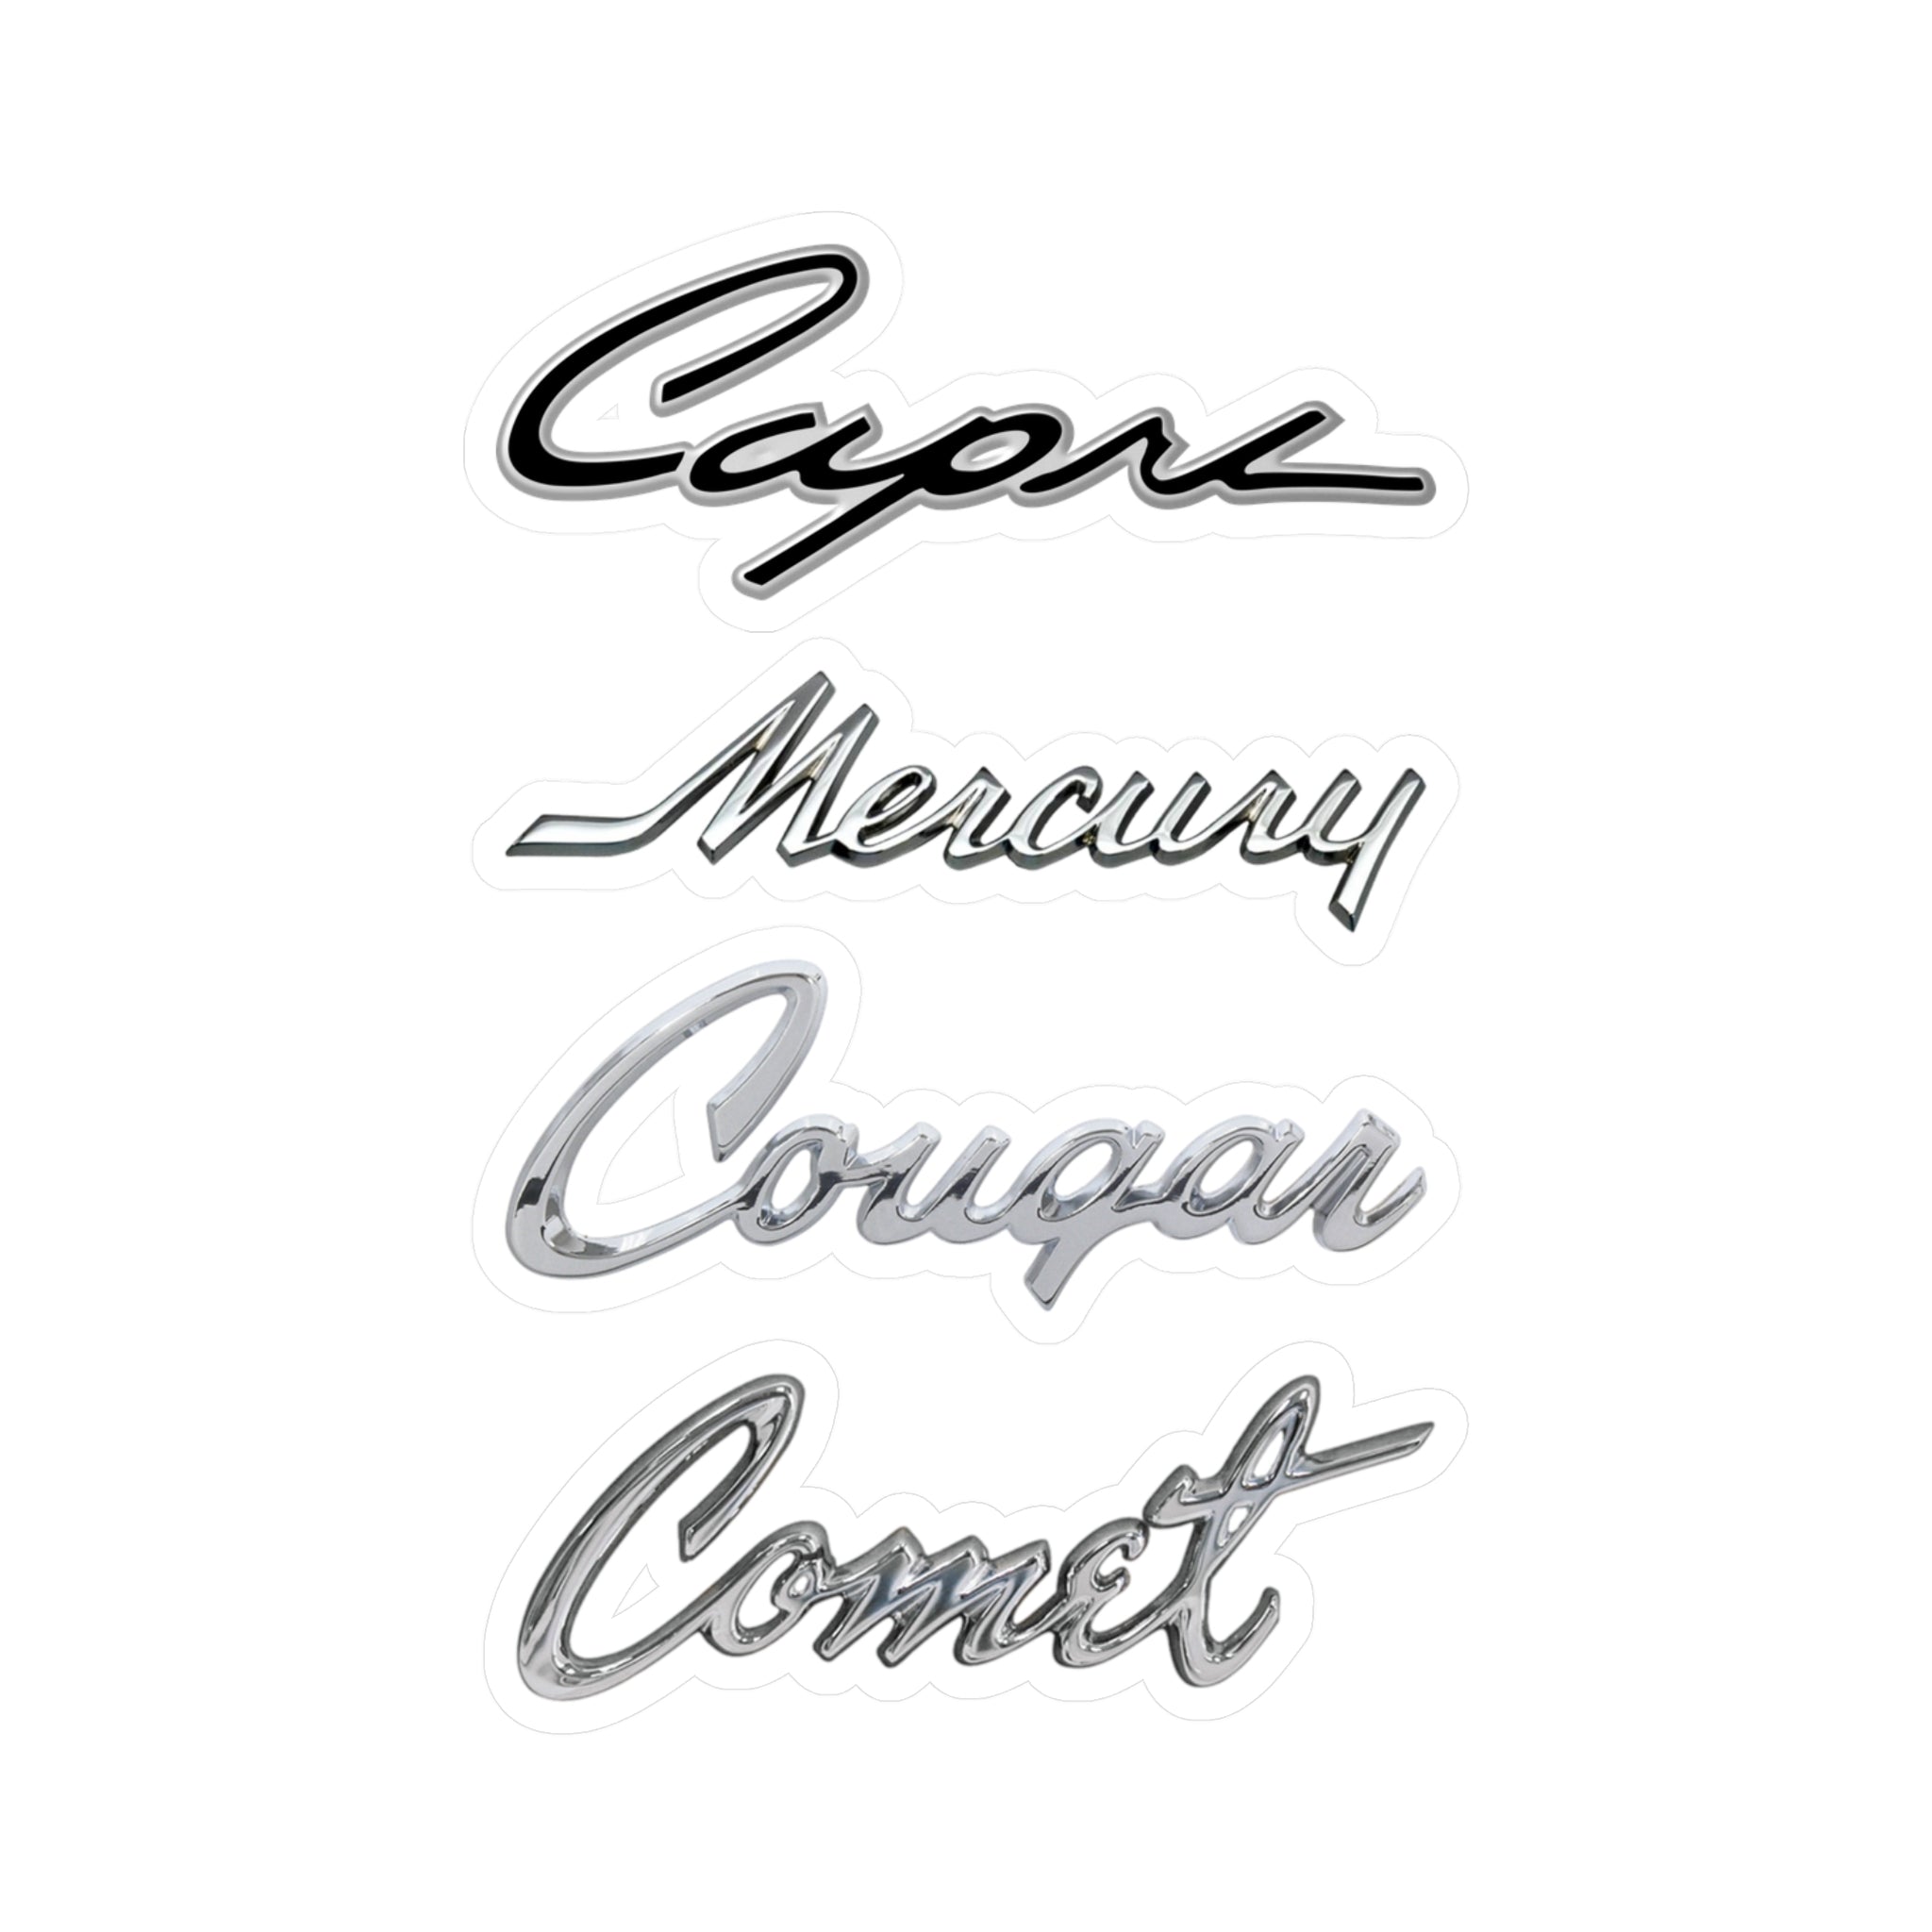 Mercury Capri Comet Cougar Emblem Vinyl Decals / Stickers Classic Car